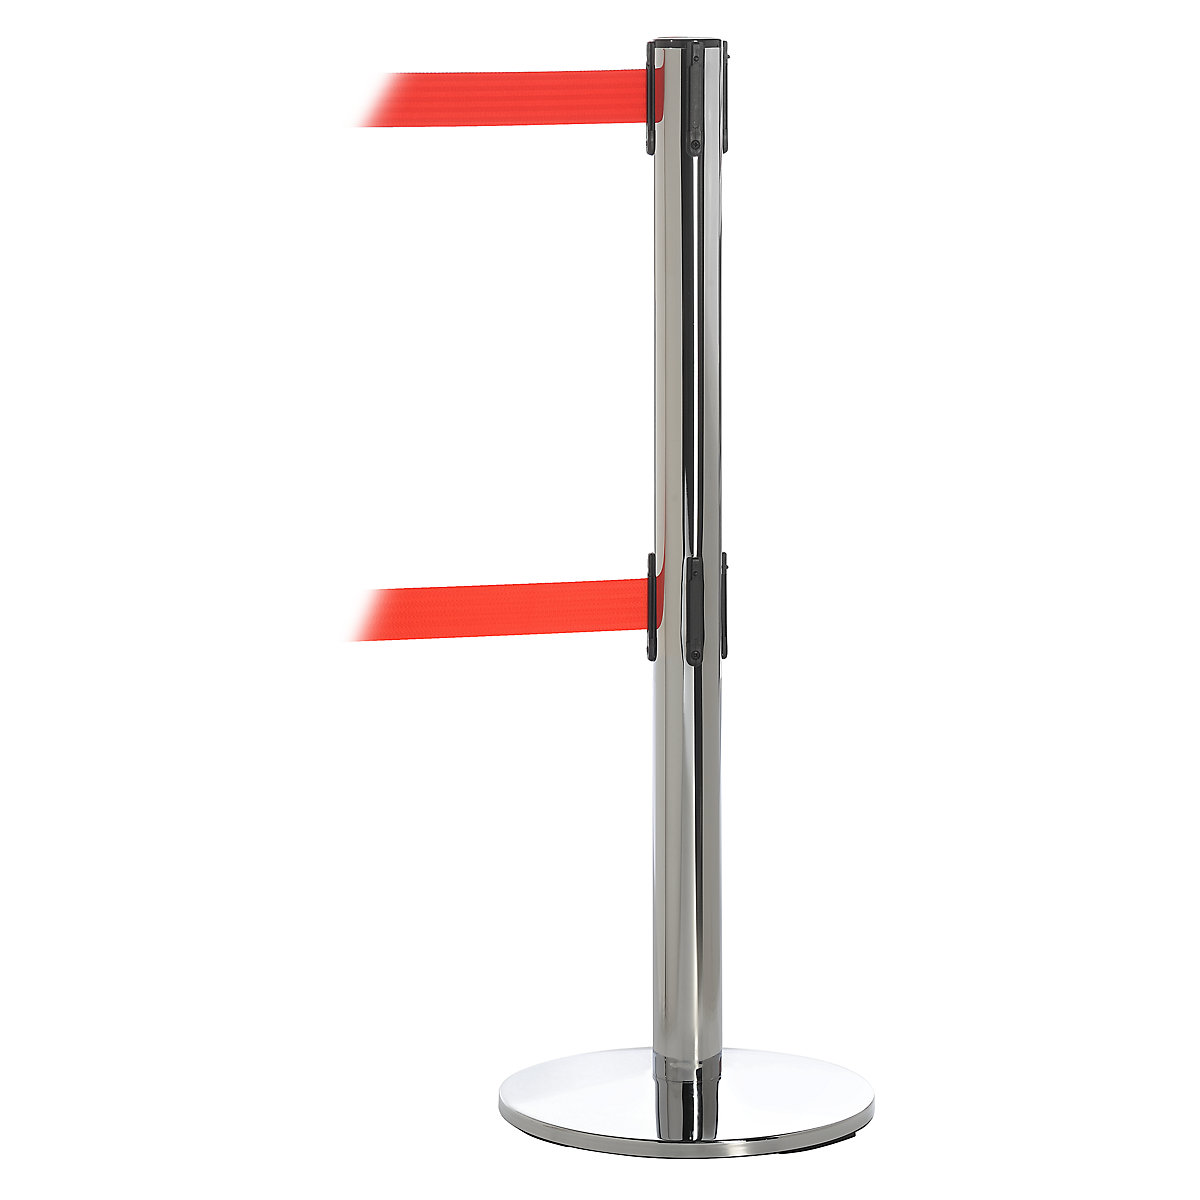 Dual line belt barrier – Tensator, chrome plated, red belt, extends 3650 mm-4